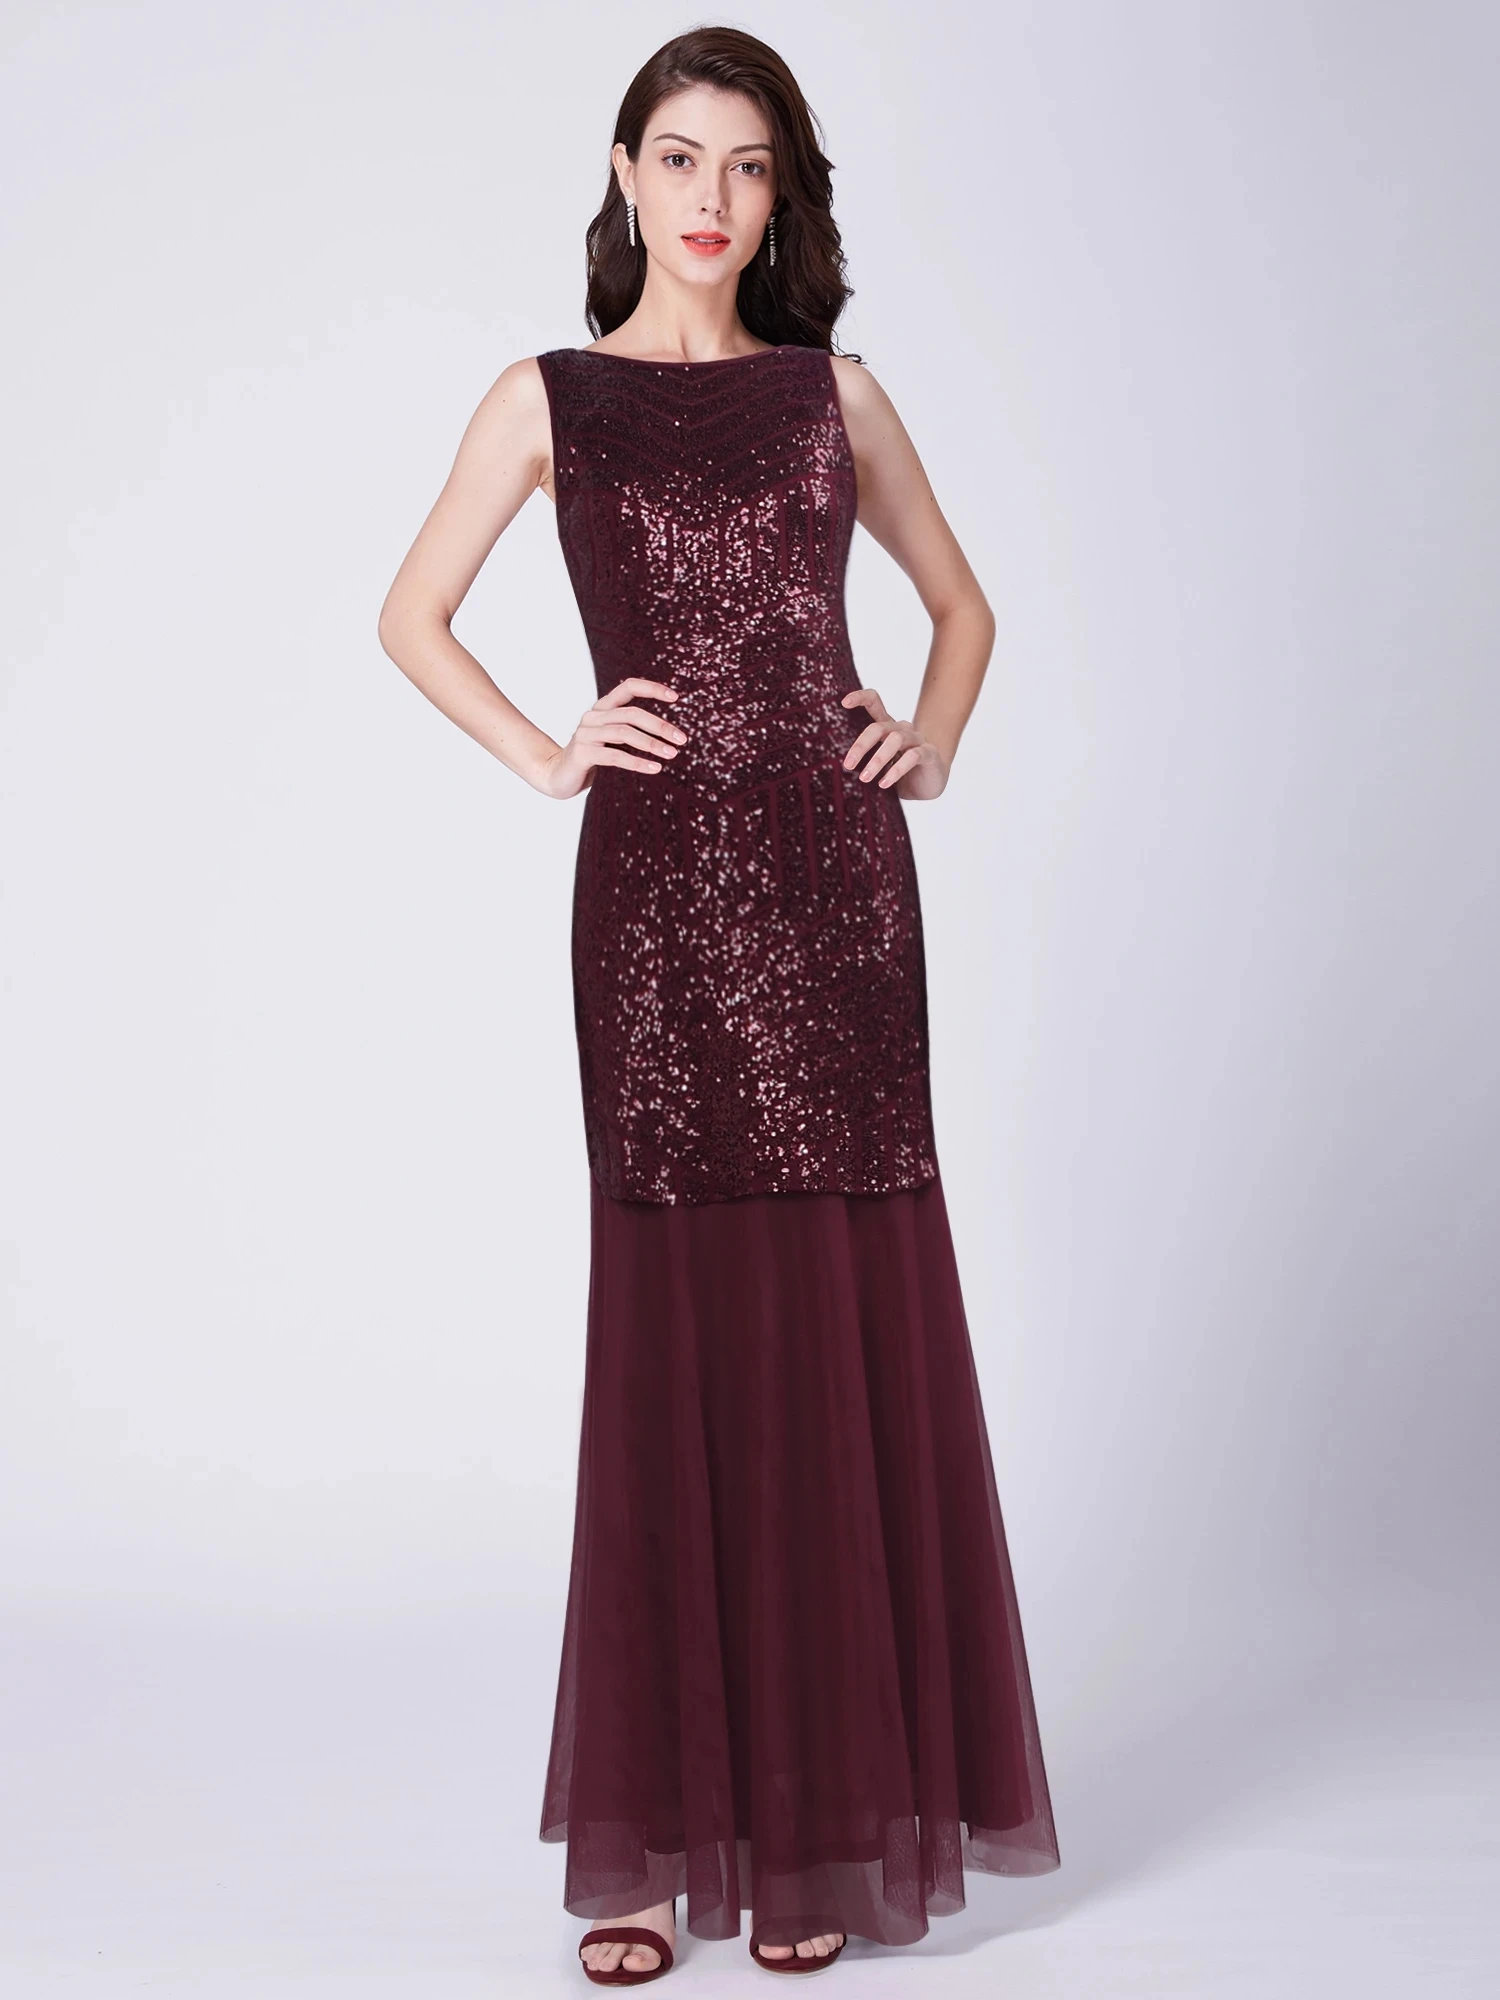 

Женское шифоновое платье-годе Ever Pretty, длинное Бордовое платье с принтом и блестками, вечернее платье, EZ07649, лето 2019